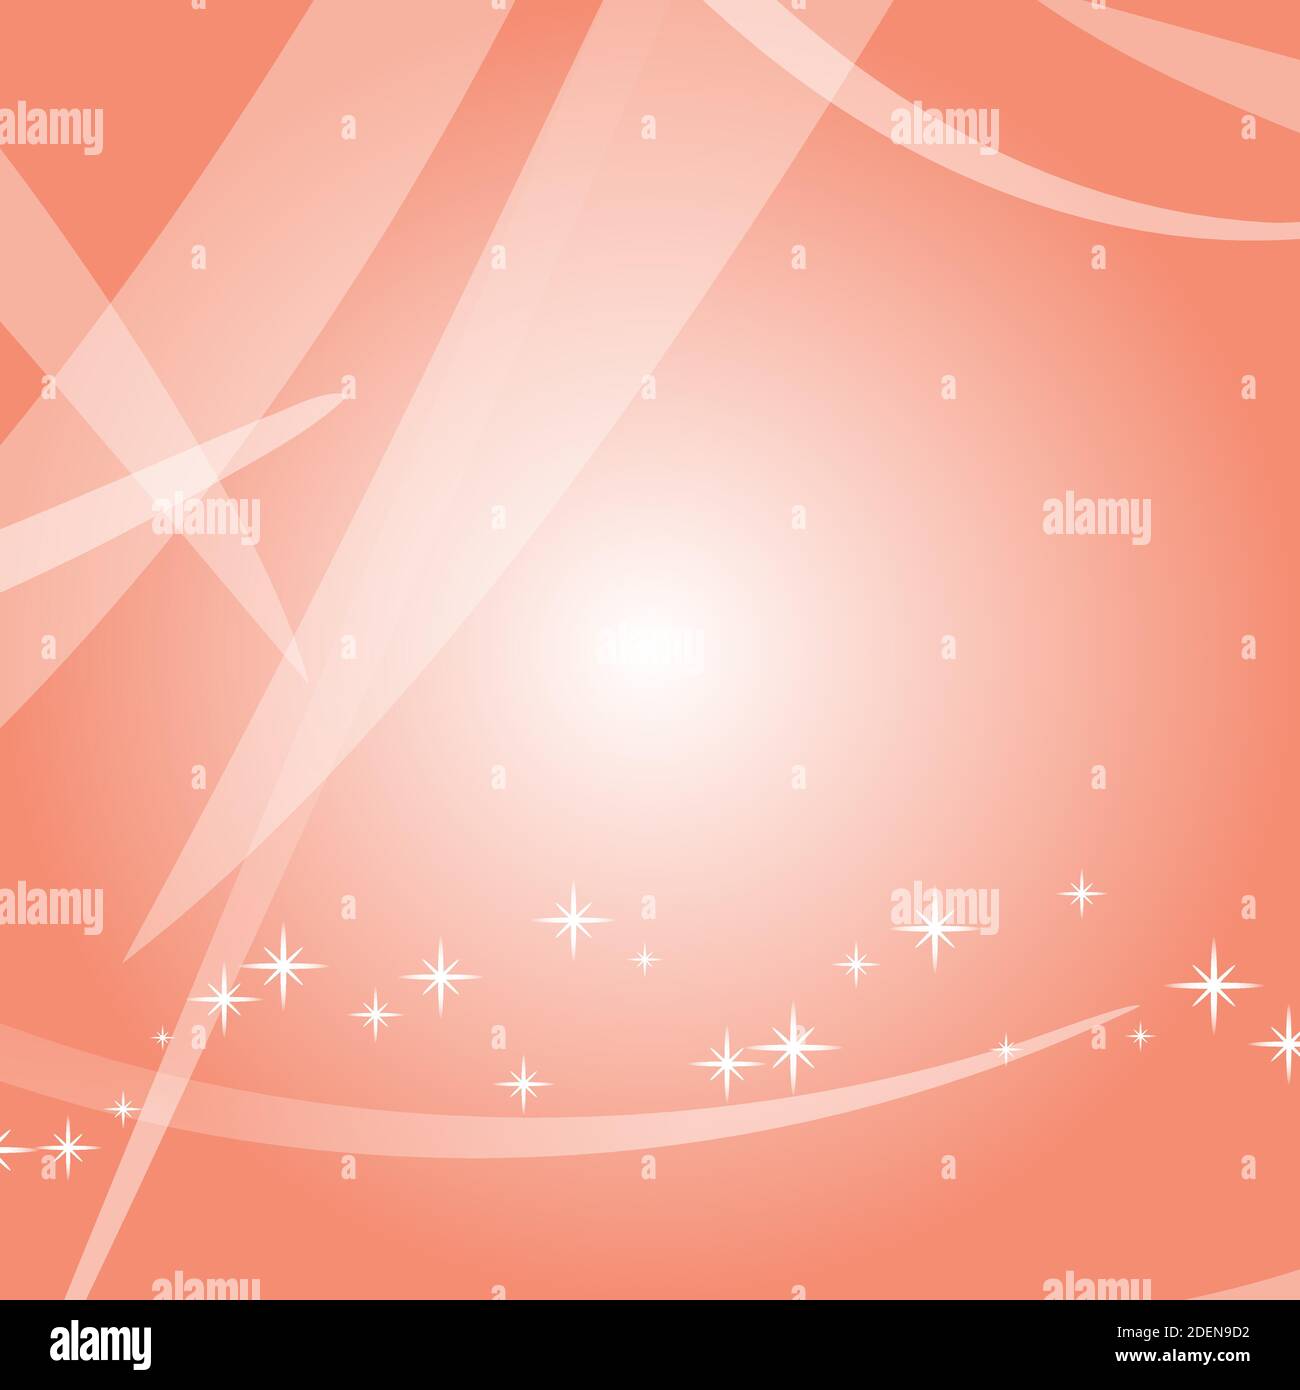 Farbenfroher abstrakter Hintergrund mit Kreisen und Sternen. Helles Design. Einfache flache Vektordarstellung. Stock Vektor